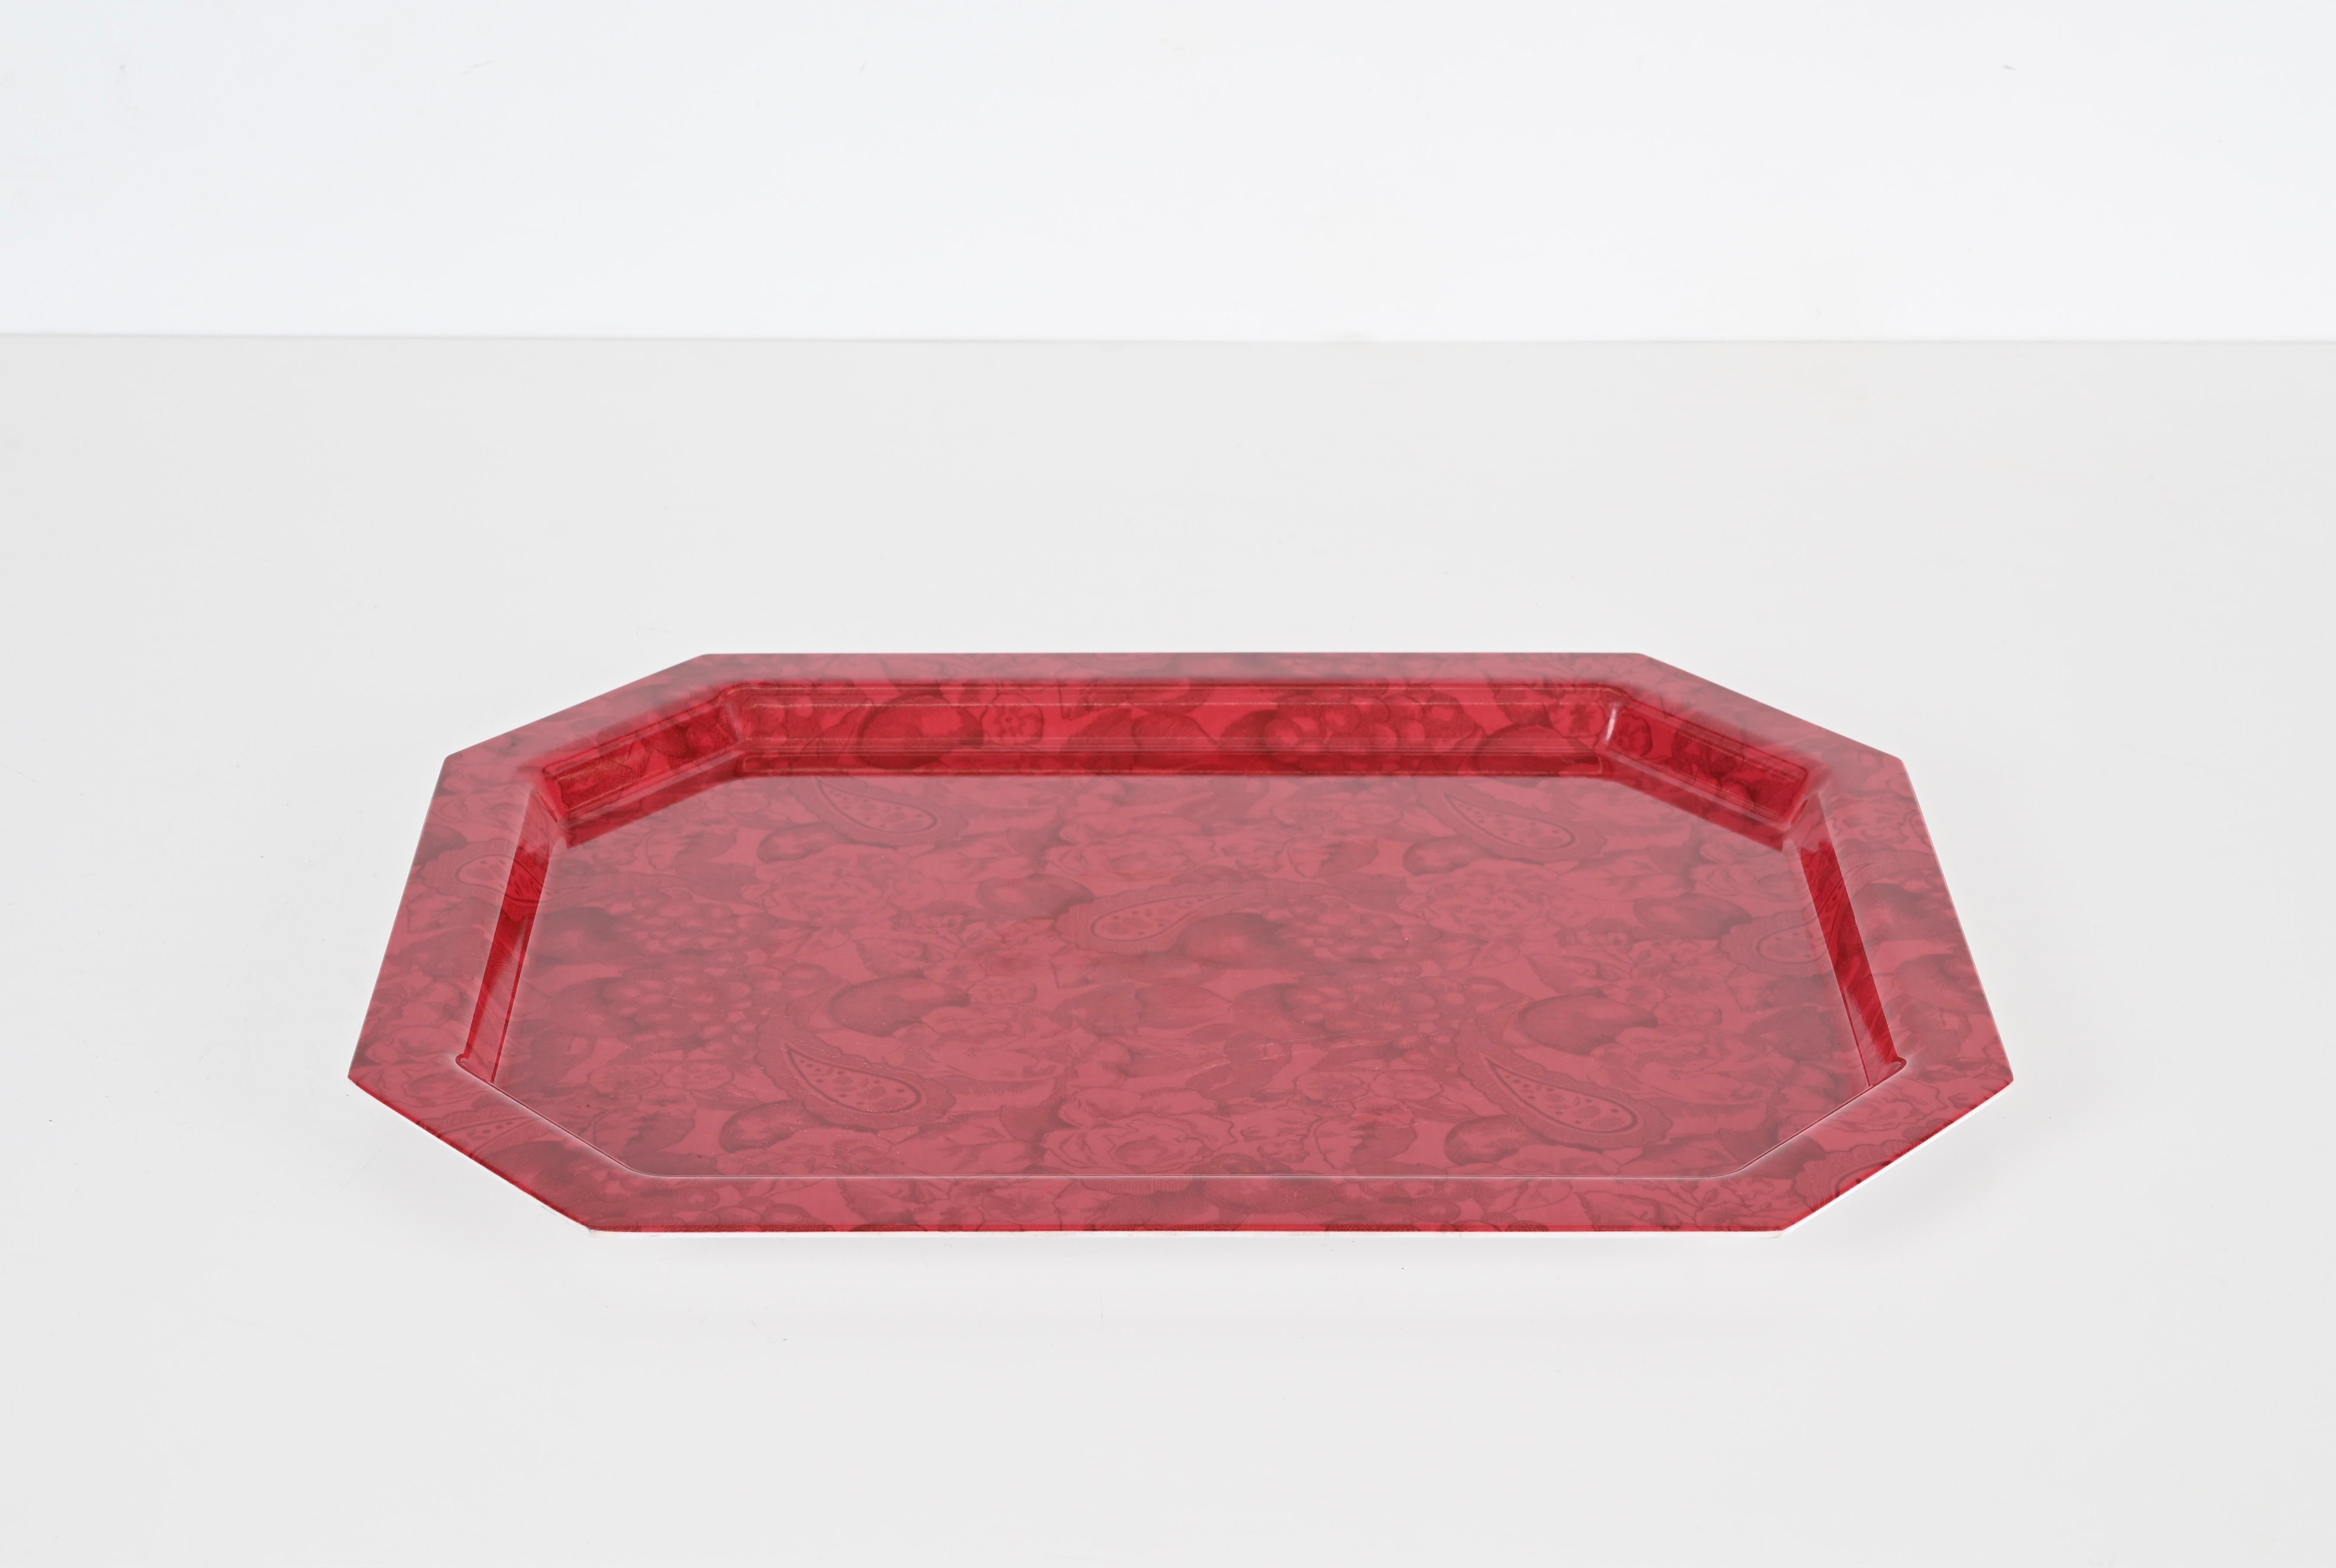 Magnifique plateau de service octogonal en acrylique rouge. Ce joli centre de table a été fabriqué en Italie dans les années 80.

Le plateau est fabriqué dans un magnifique acrylique rouge vibrant qui comporte des décorations en cachemire. 

Une